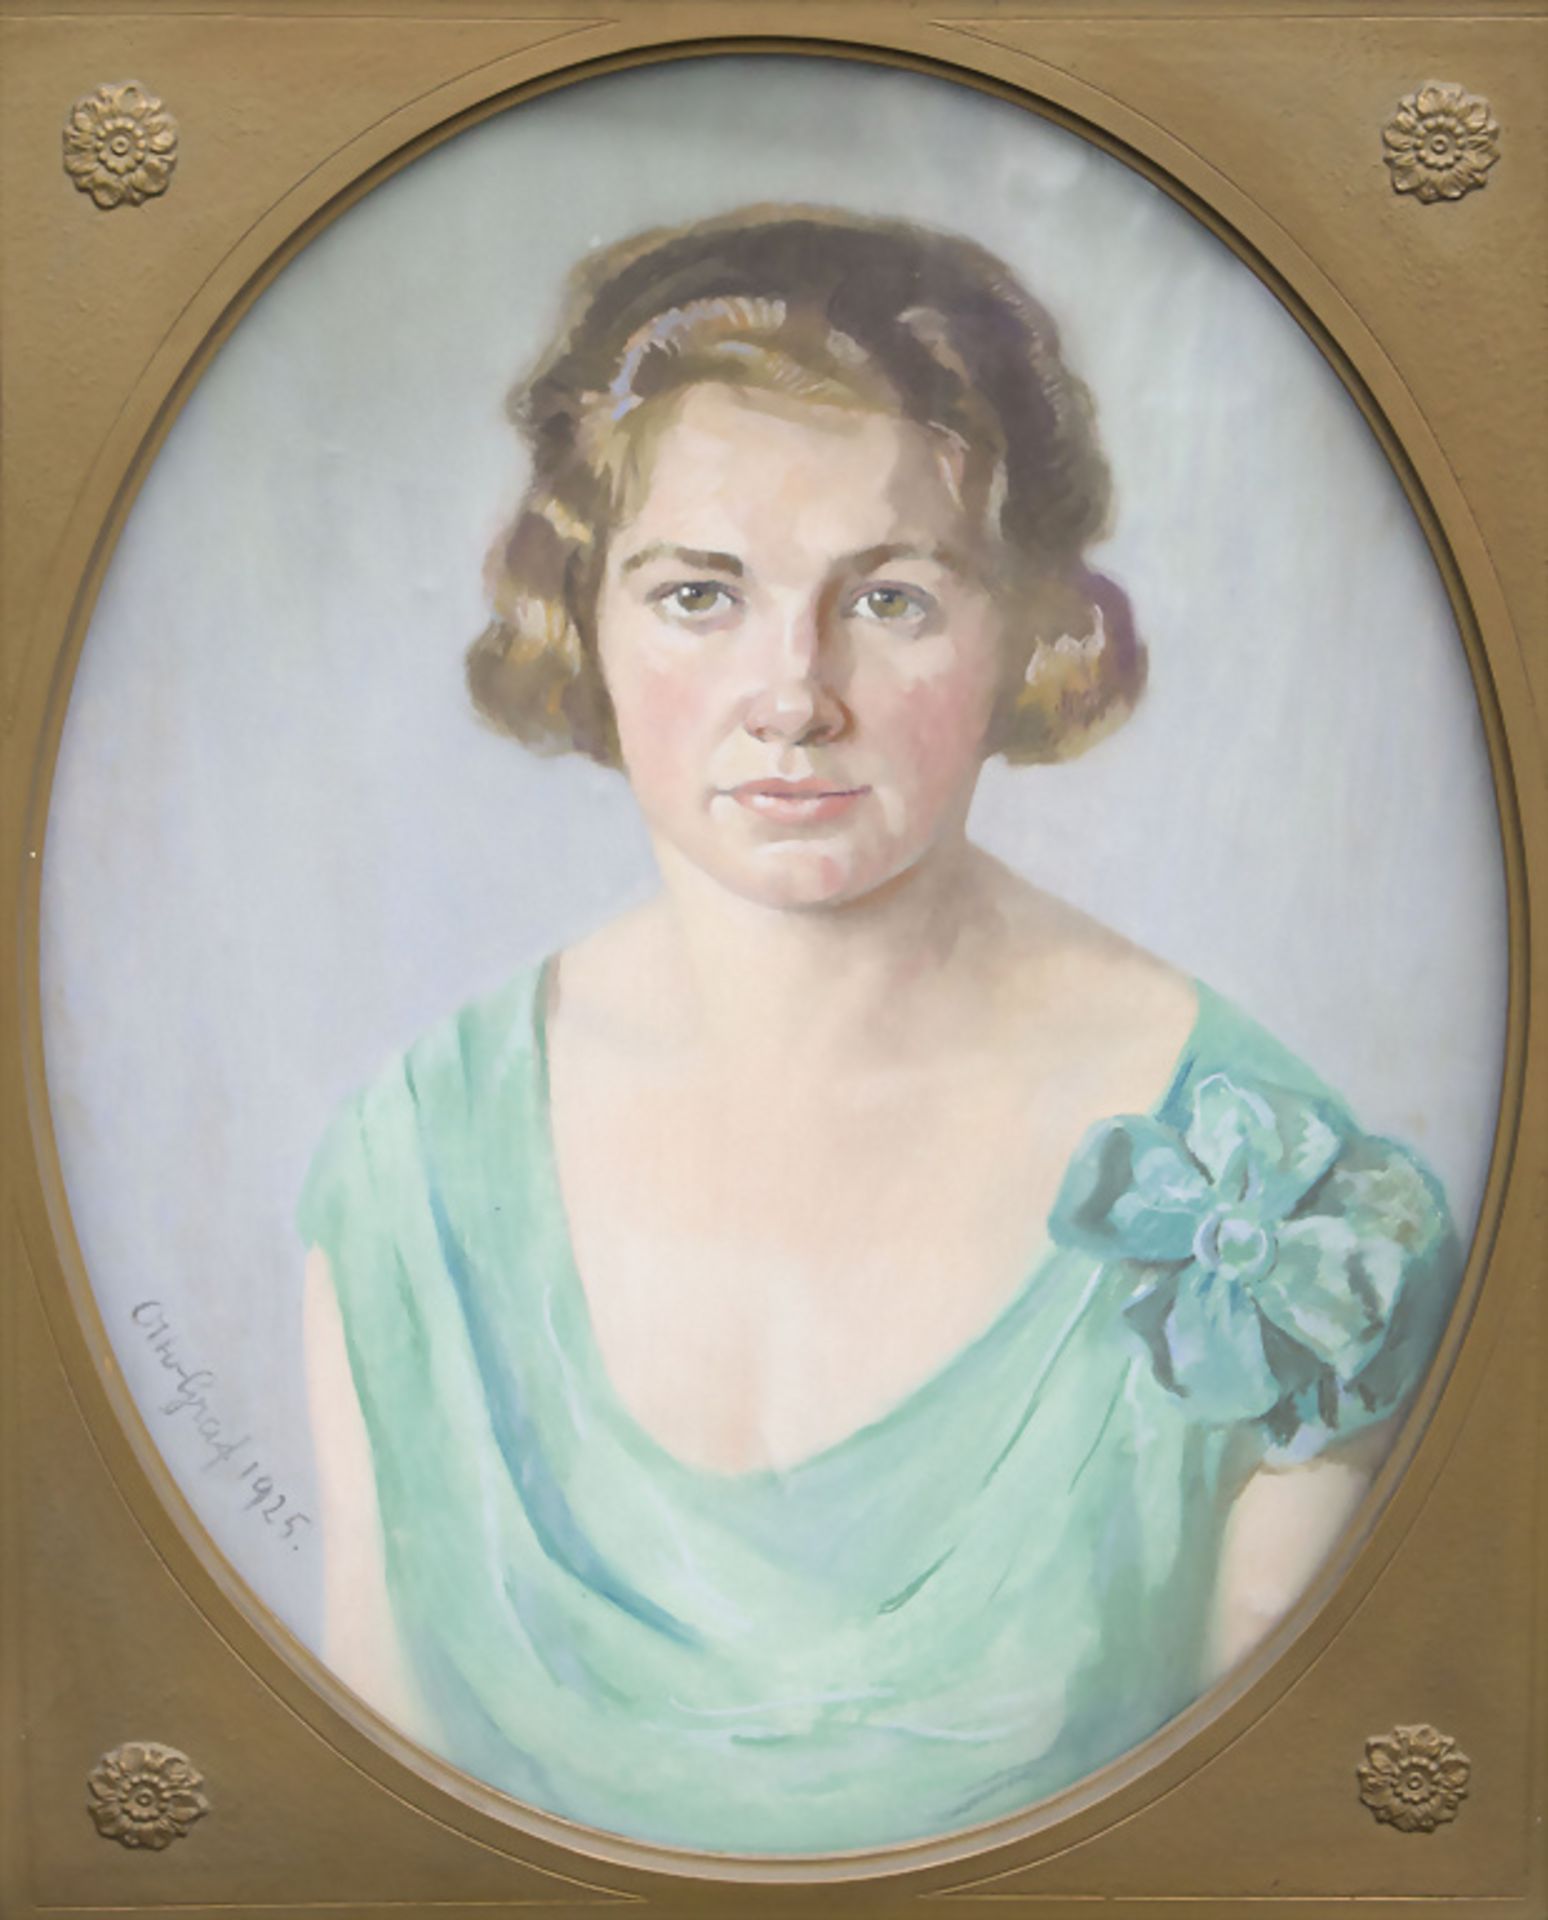 Otto GRAF (1882-1950), Damenporträt / A portrait of a lady, 1925